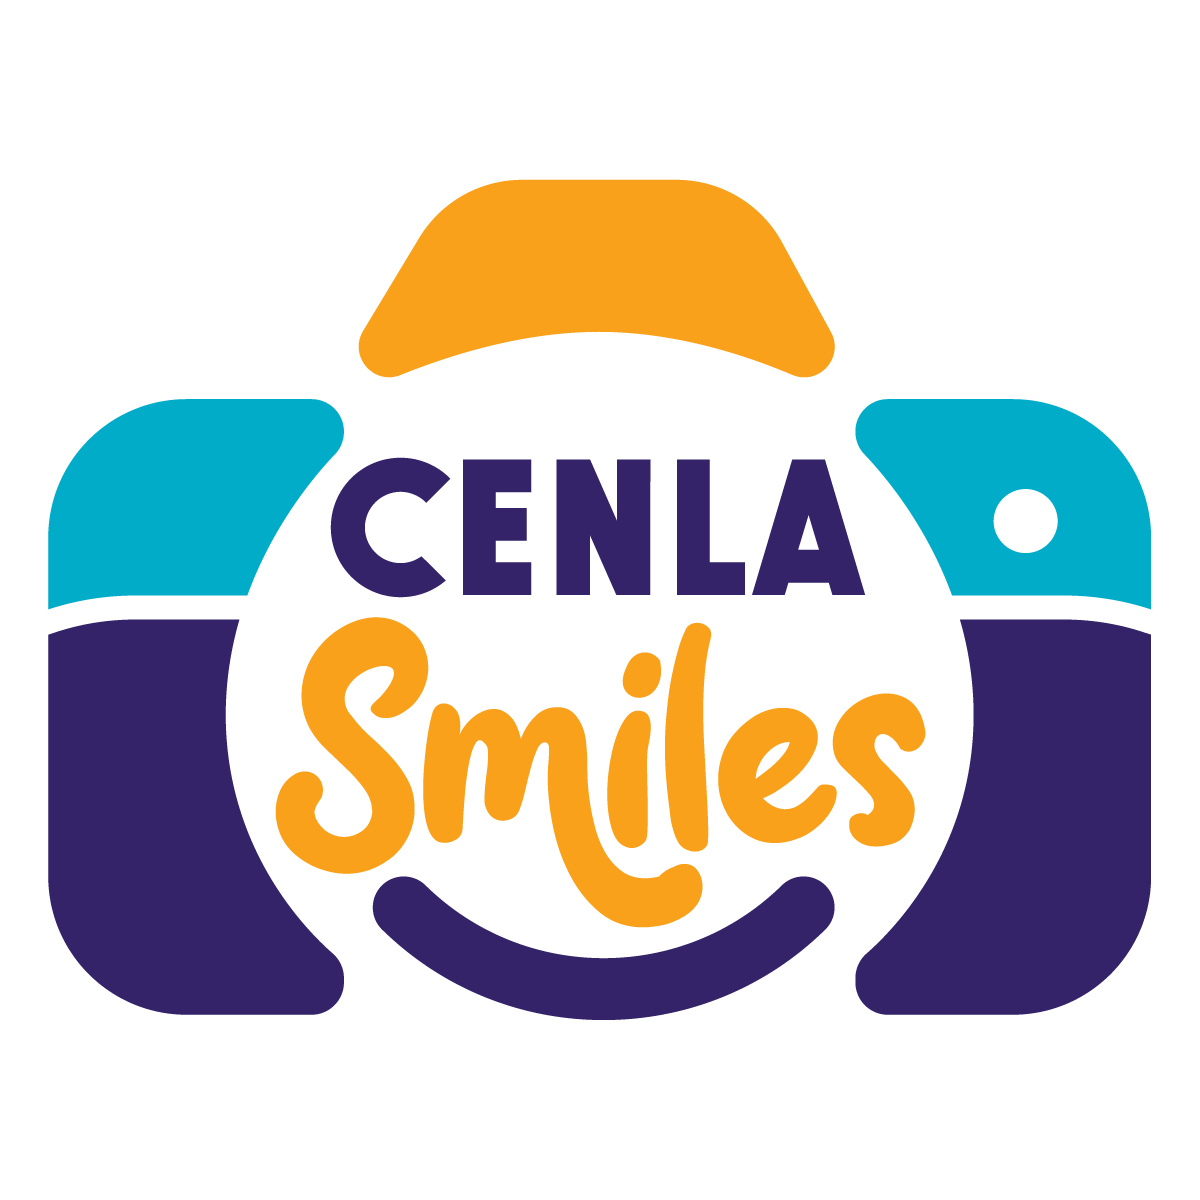 Cenla Smiles